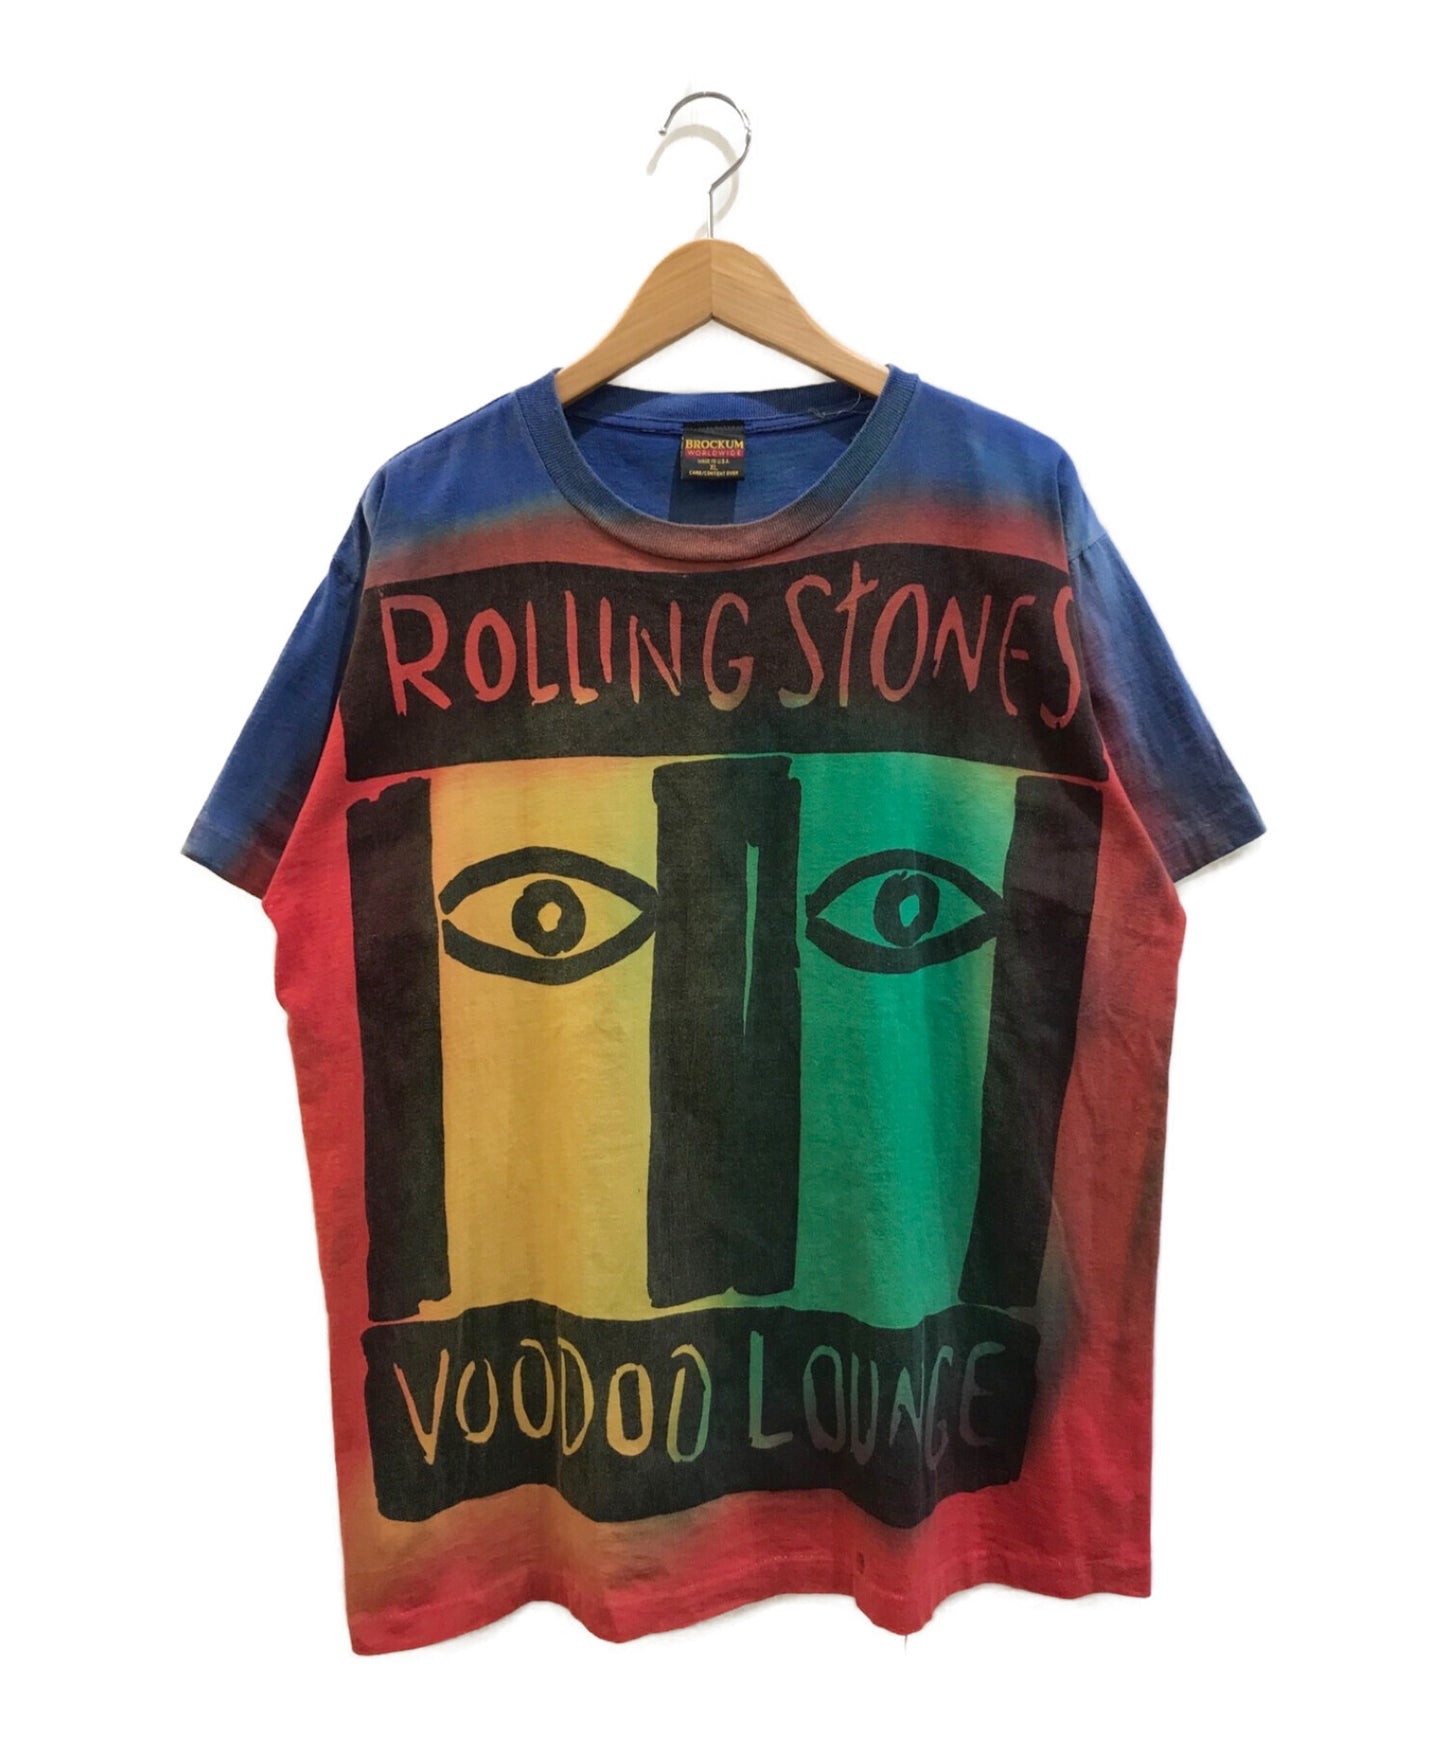 [빈티지 옷] 90 년대 롤링 스톤즈 밴드 티셔츠